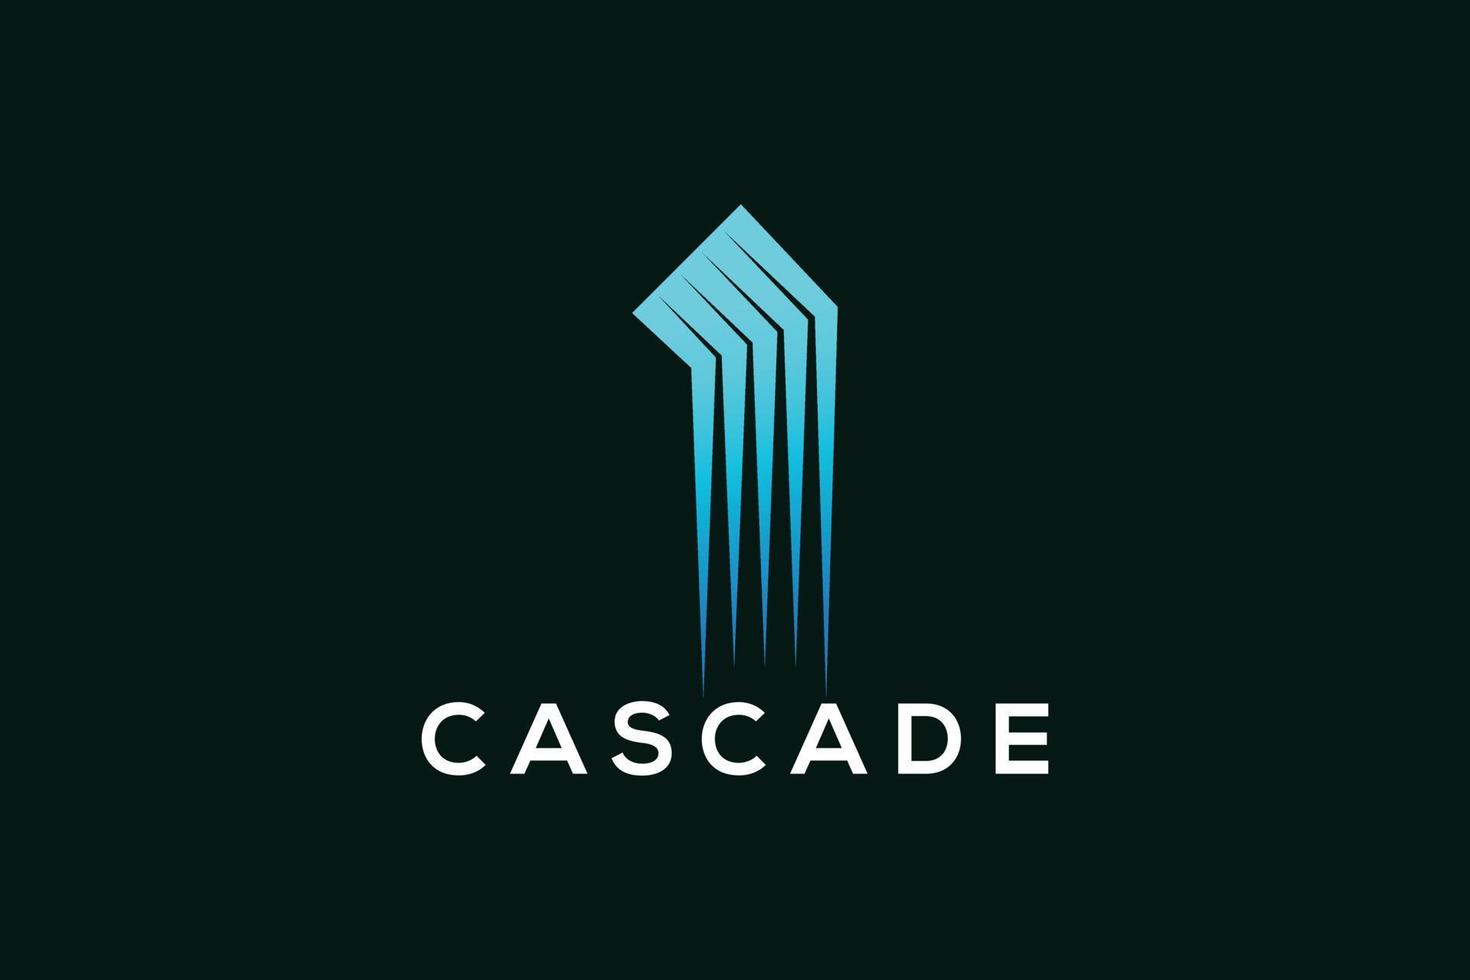 Colorful cascade fountain abstract logo design vector template